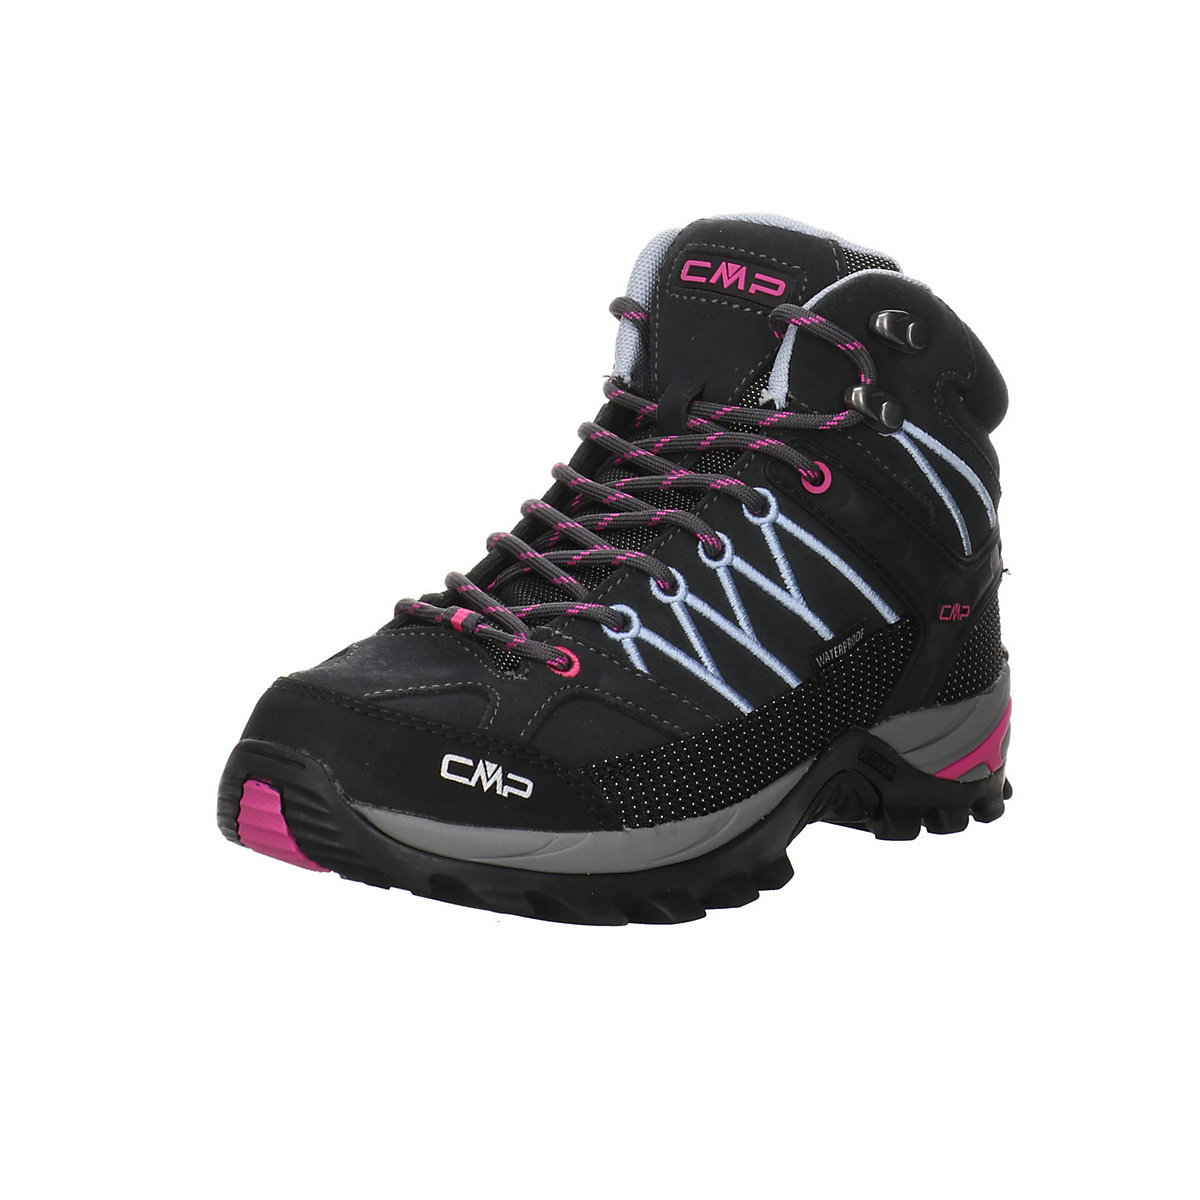 CMP Damen Schuhe Outdoor Rigel Mid Outdoorschuh Wandern Trekking Leder-/Textilkombination uni Outdoorschuhe grau